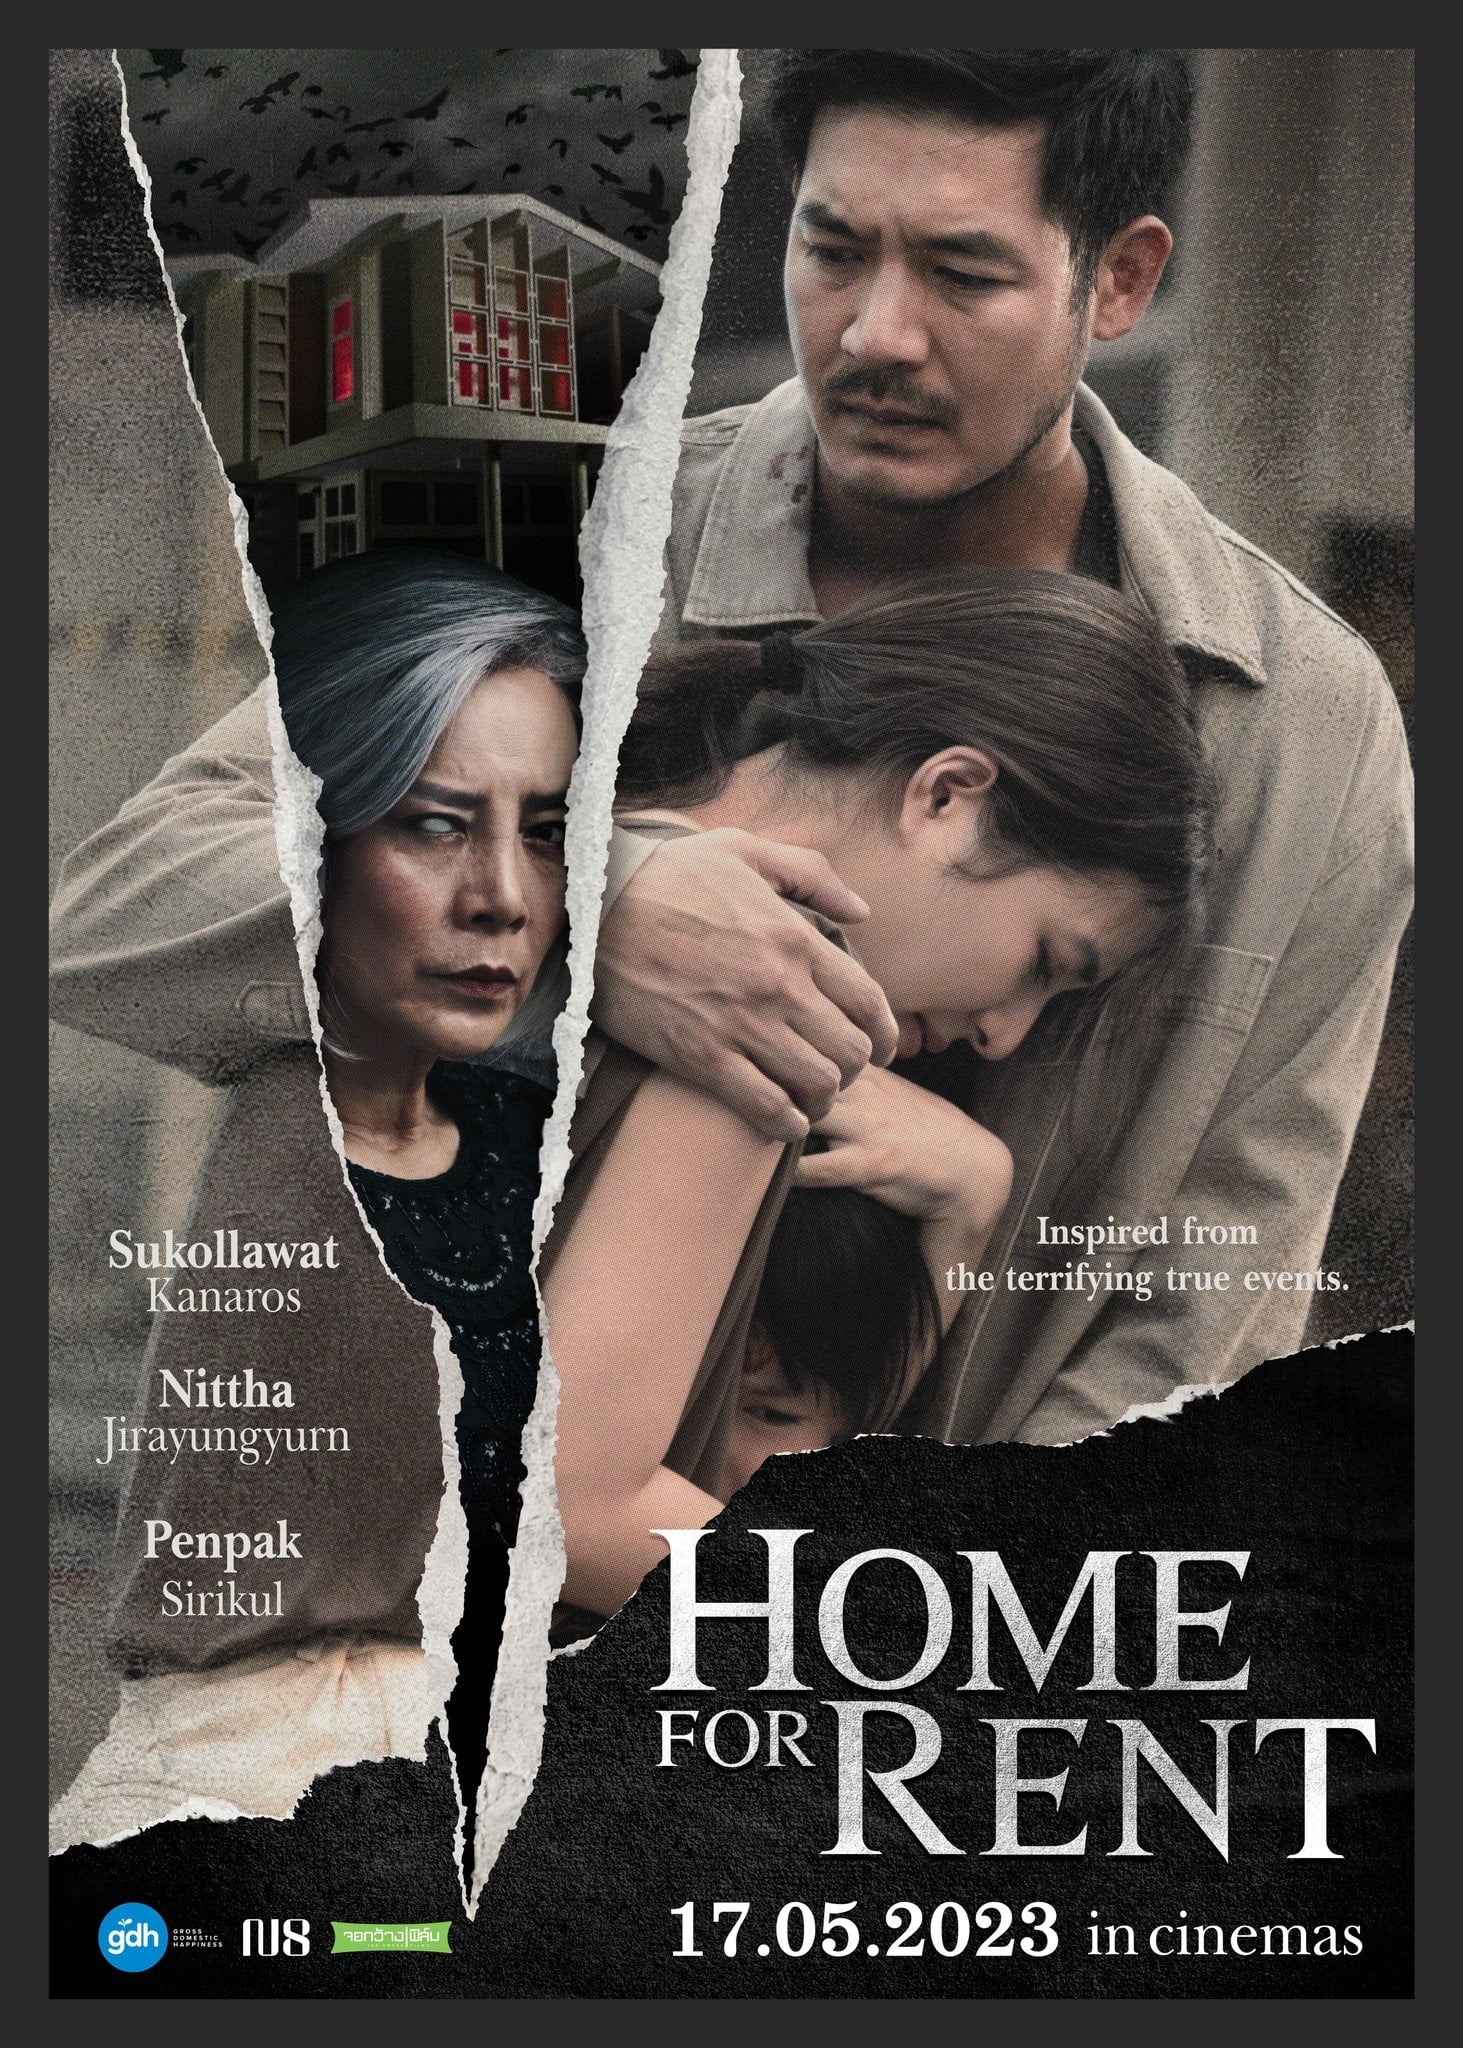 دانلود صوت دوبله فیلم Home for Rent